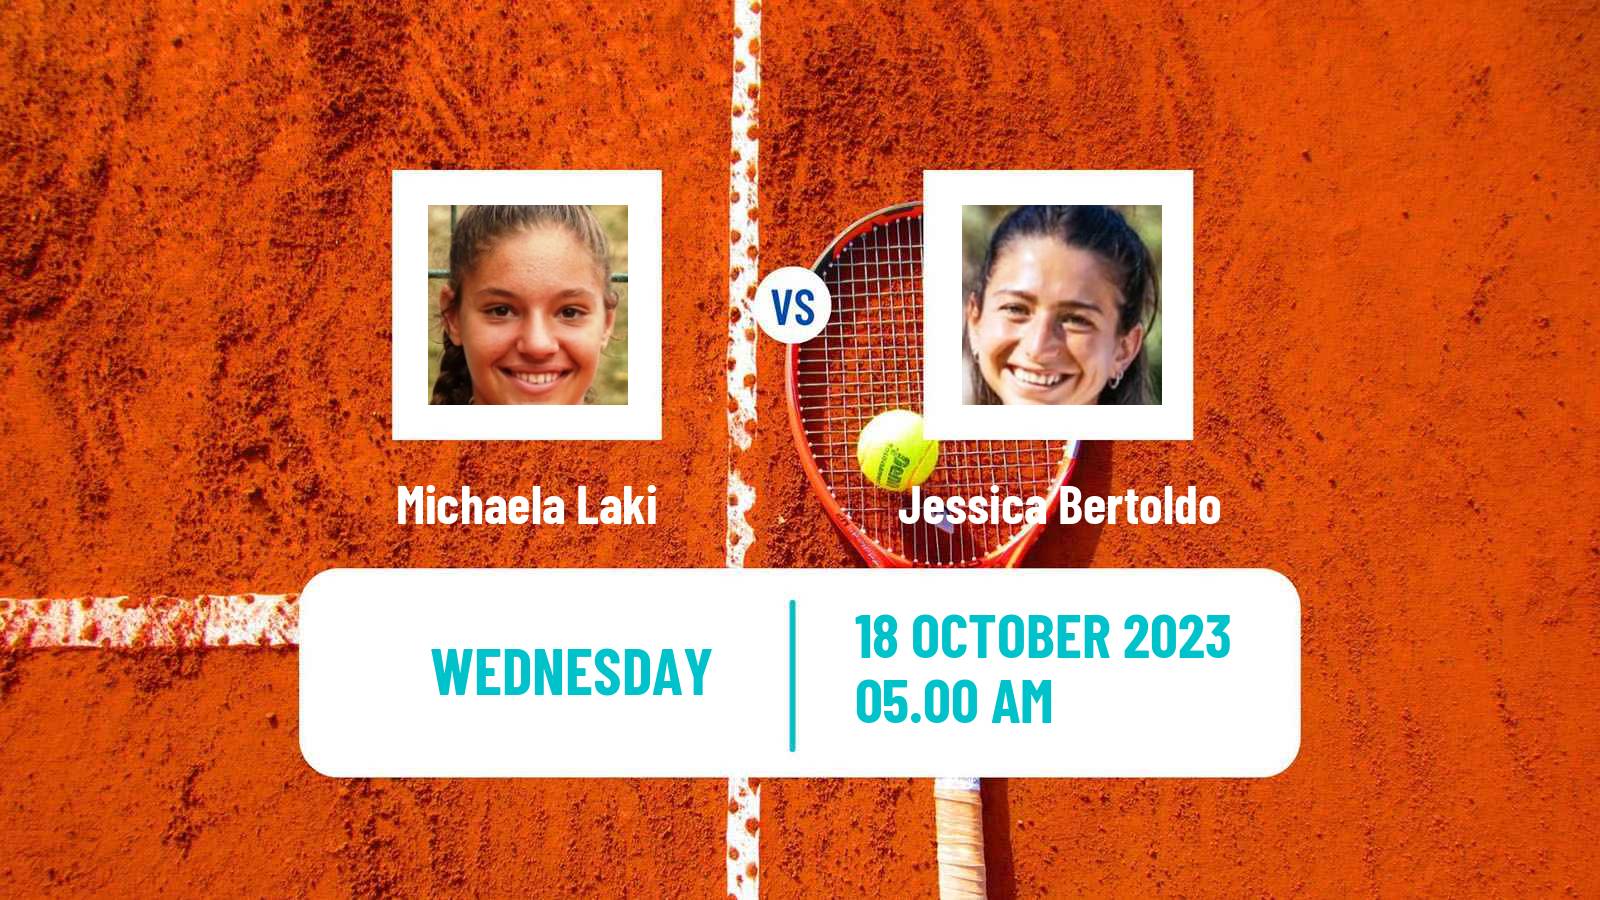 Tennis ITF W15 Heraklion 3 Women Michaela Laki - Jessica Bertoldo